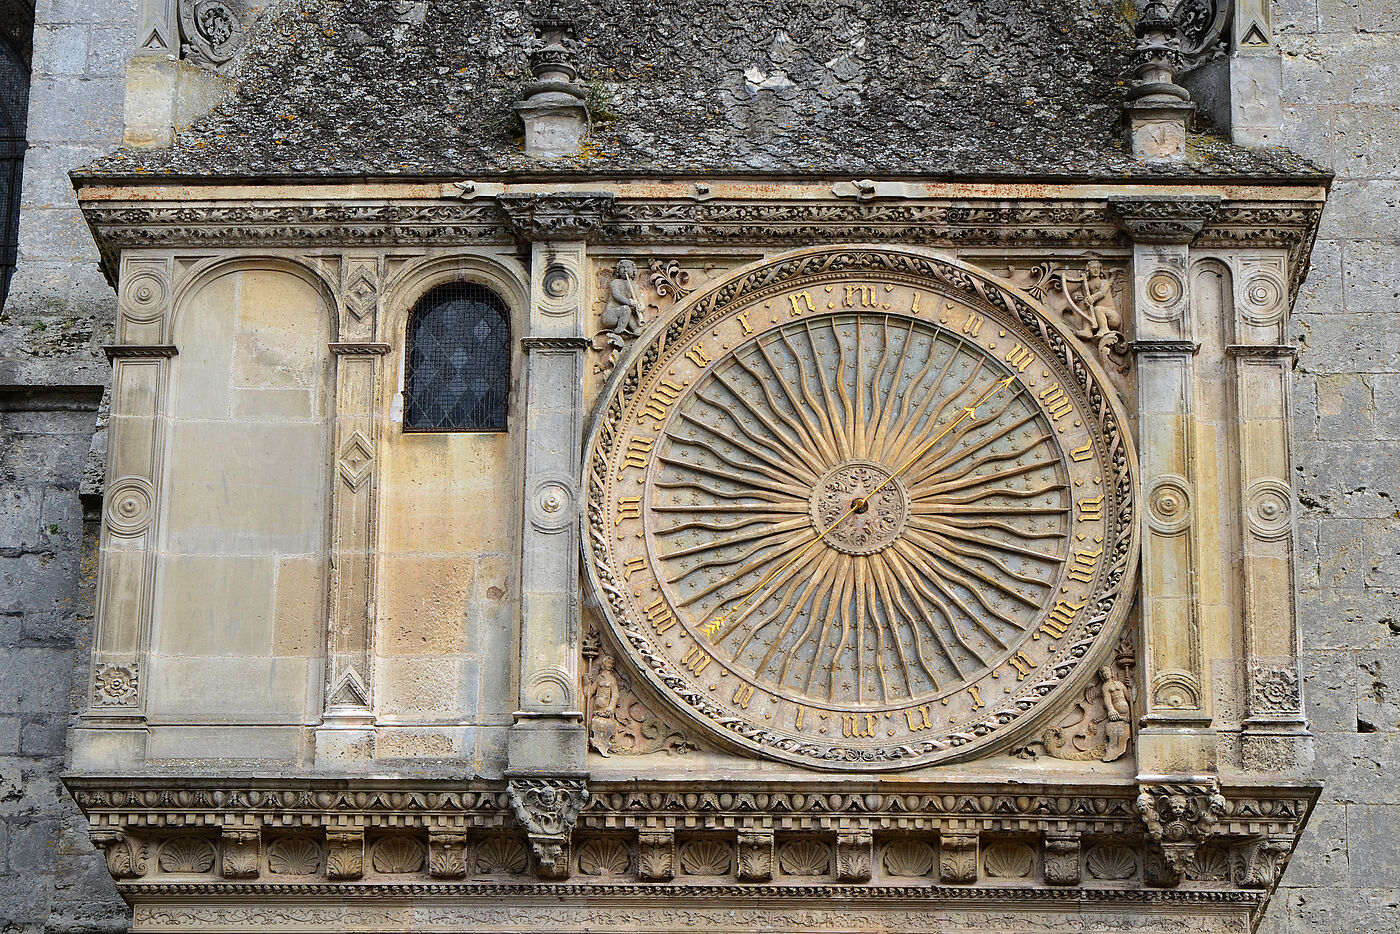 Zifferblatt der astronomischen Uhr in der Kathedrale Notre-Dame zu Chartres.